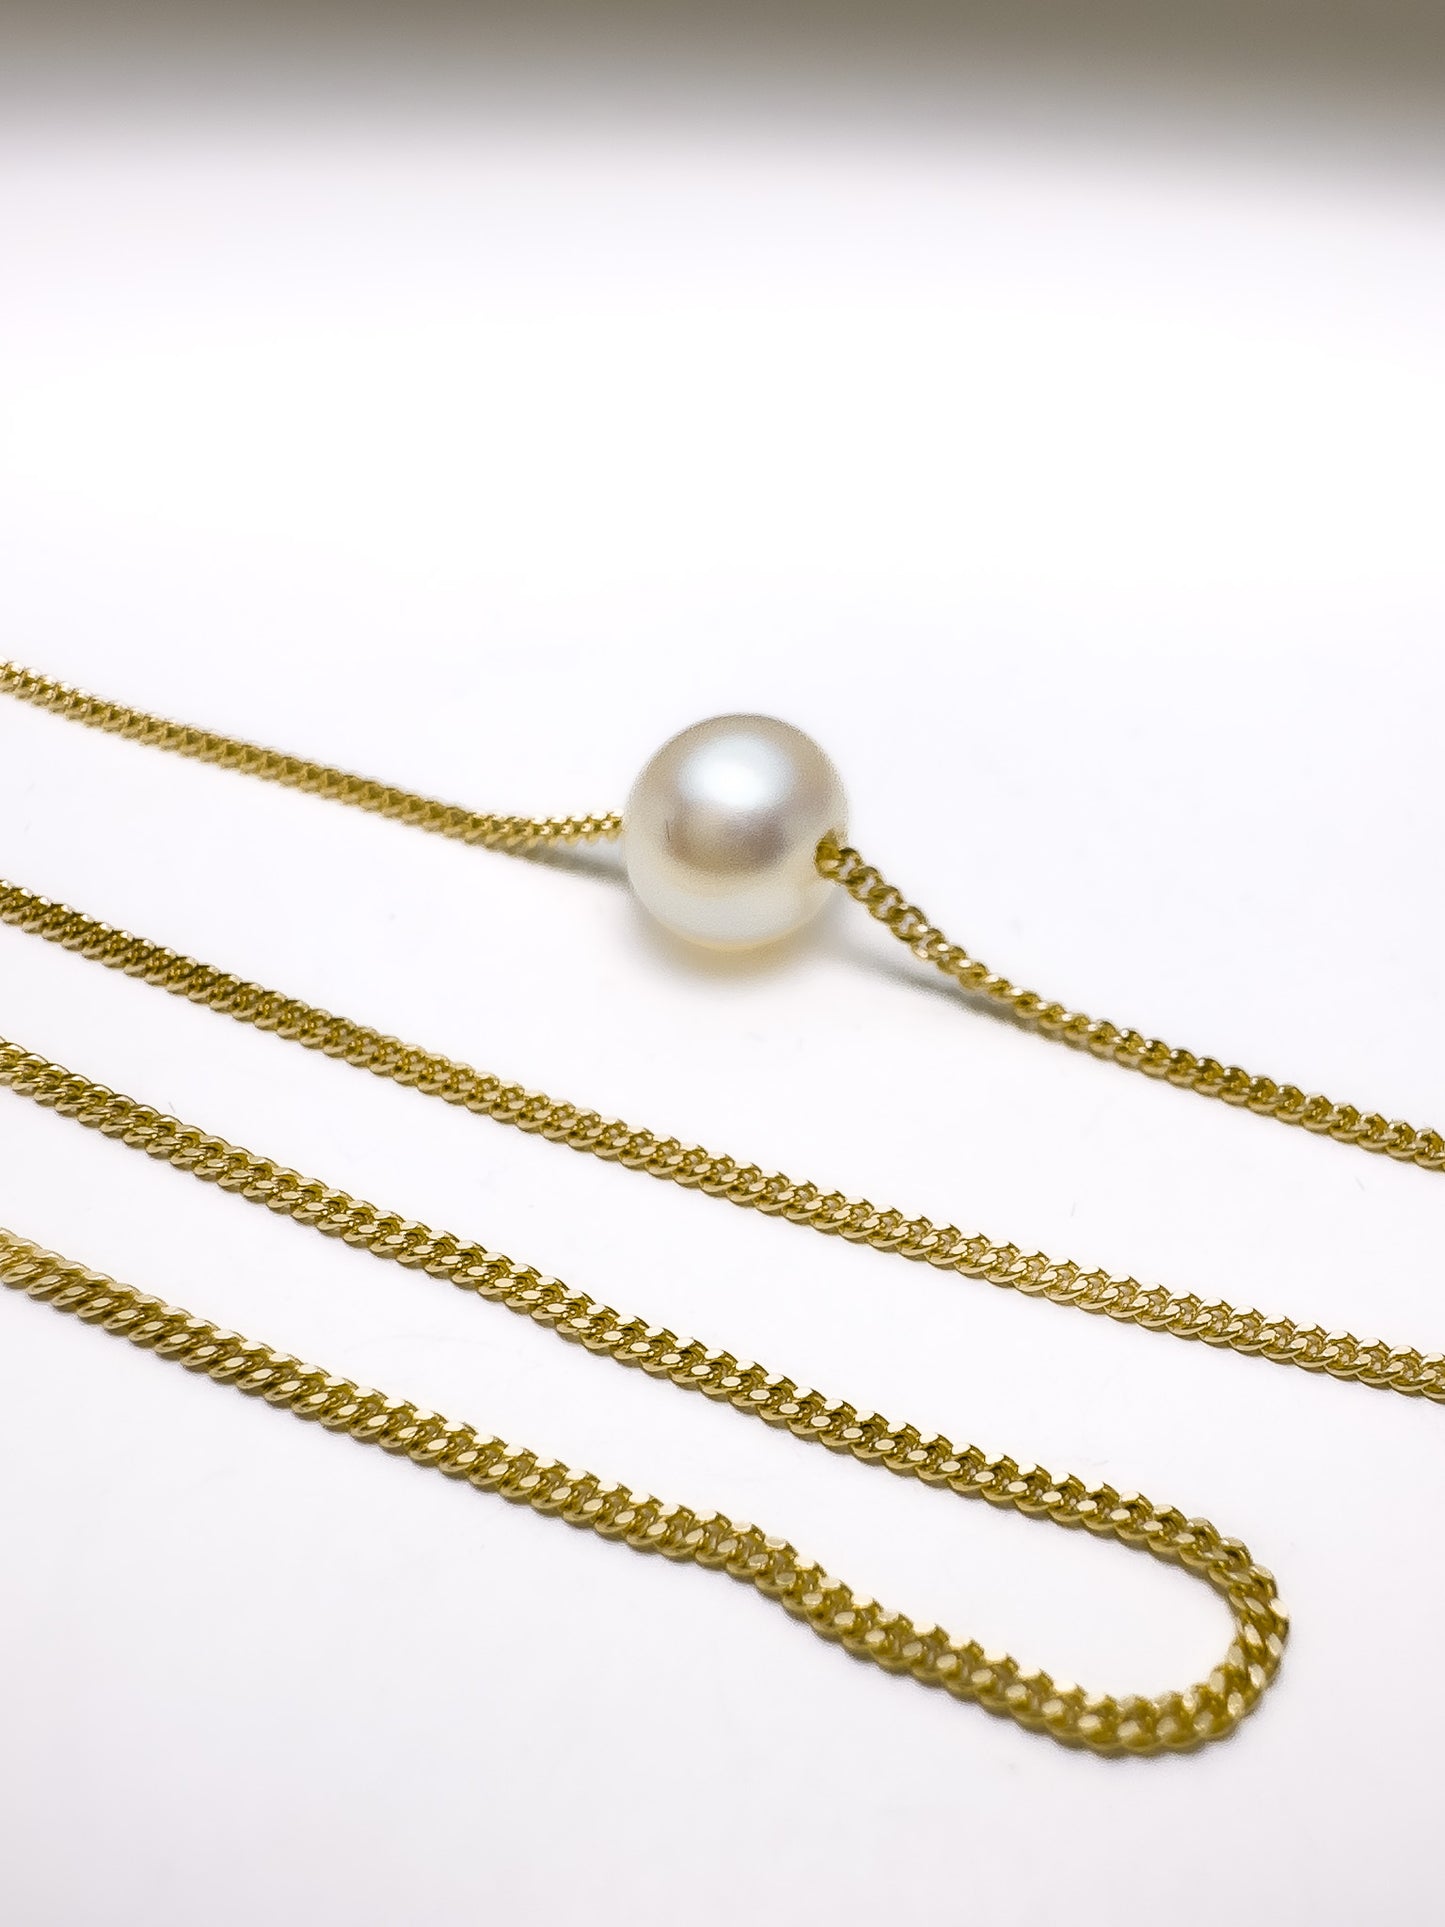 Collar delicado de perlas en blanco, neón y melocotón